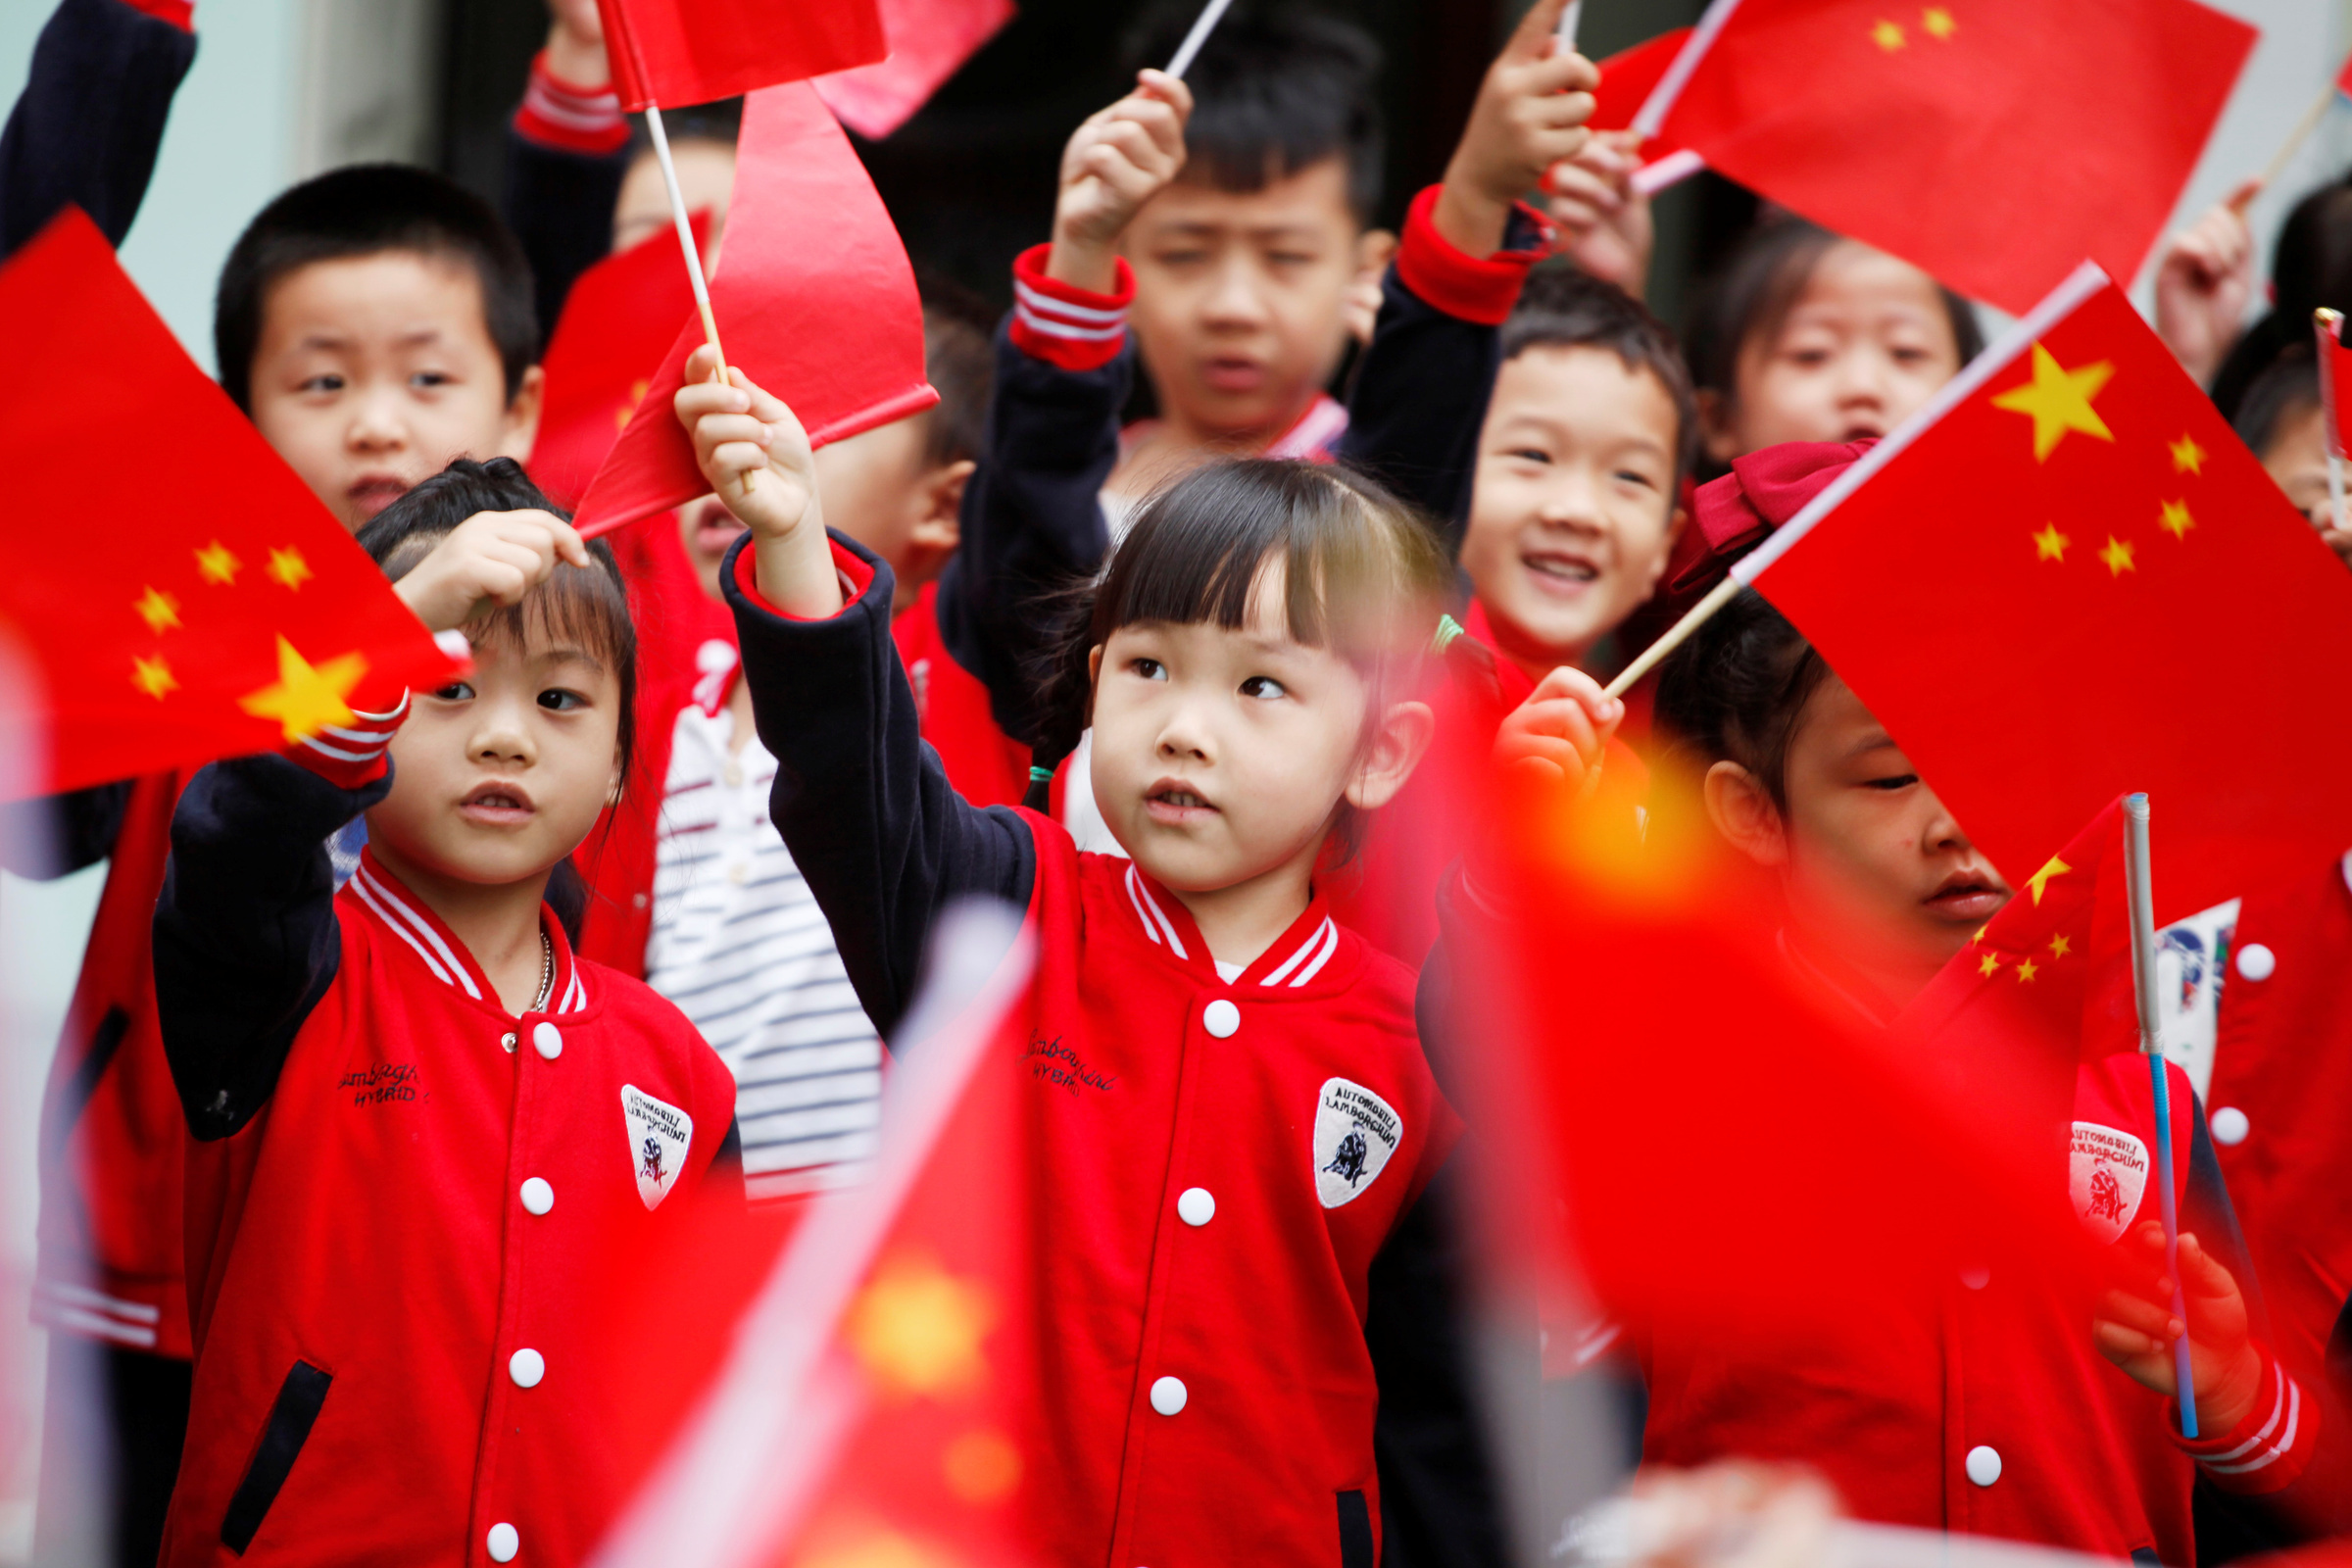 Áp lực kinh tế 'đe dọa' truyền thống sinh con tuổi rồng của người Trung Quốc